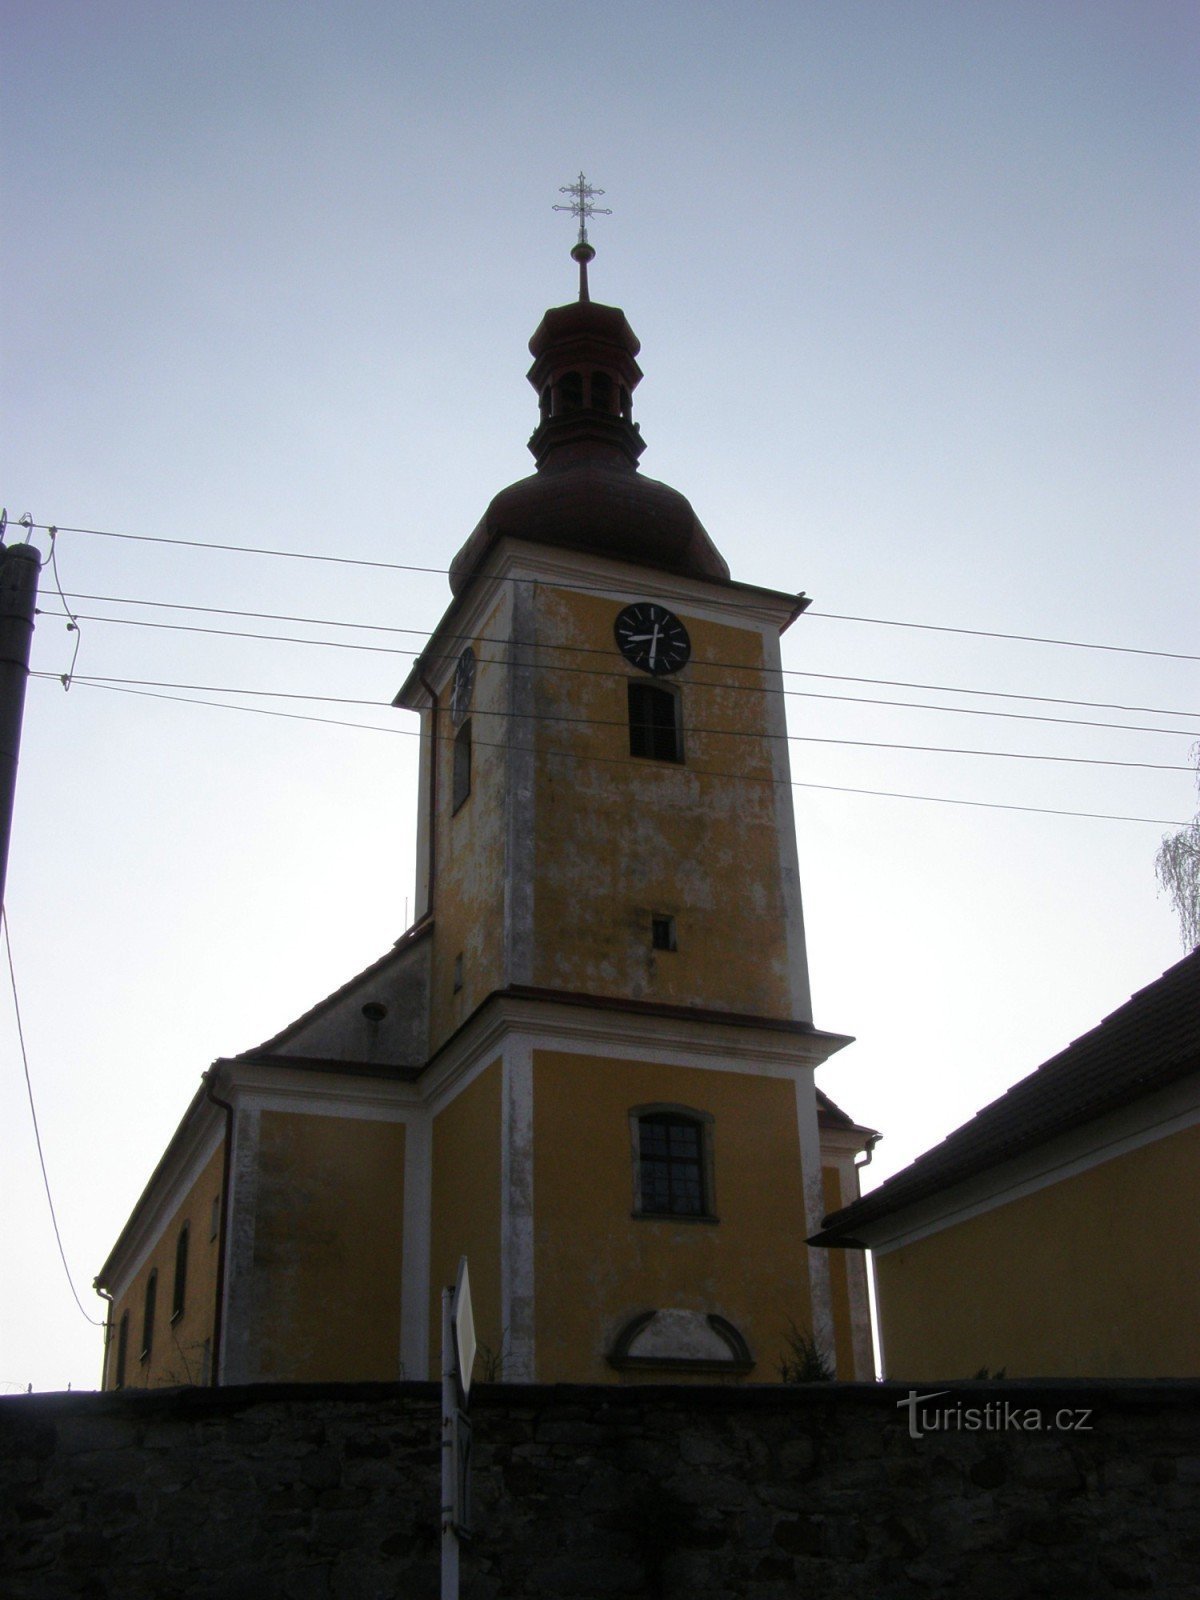 Rybná nad Zdobnicí - église de St. Jakub